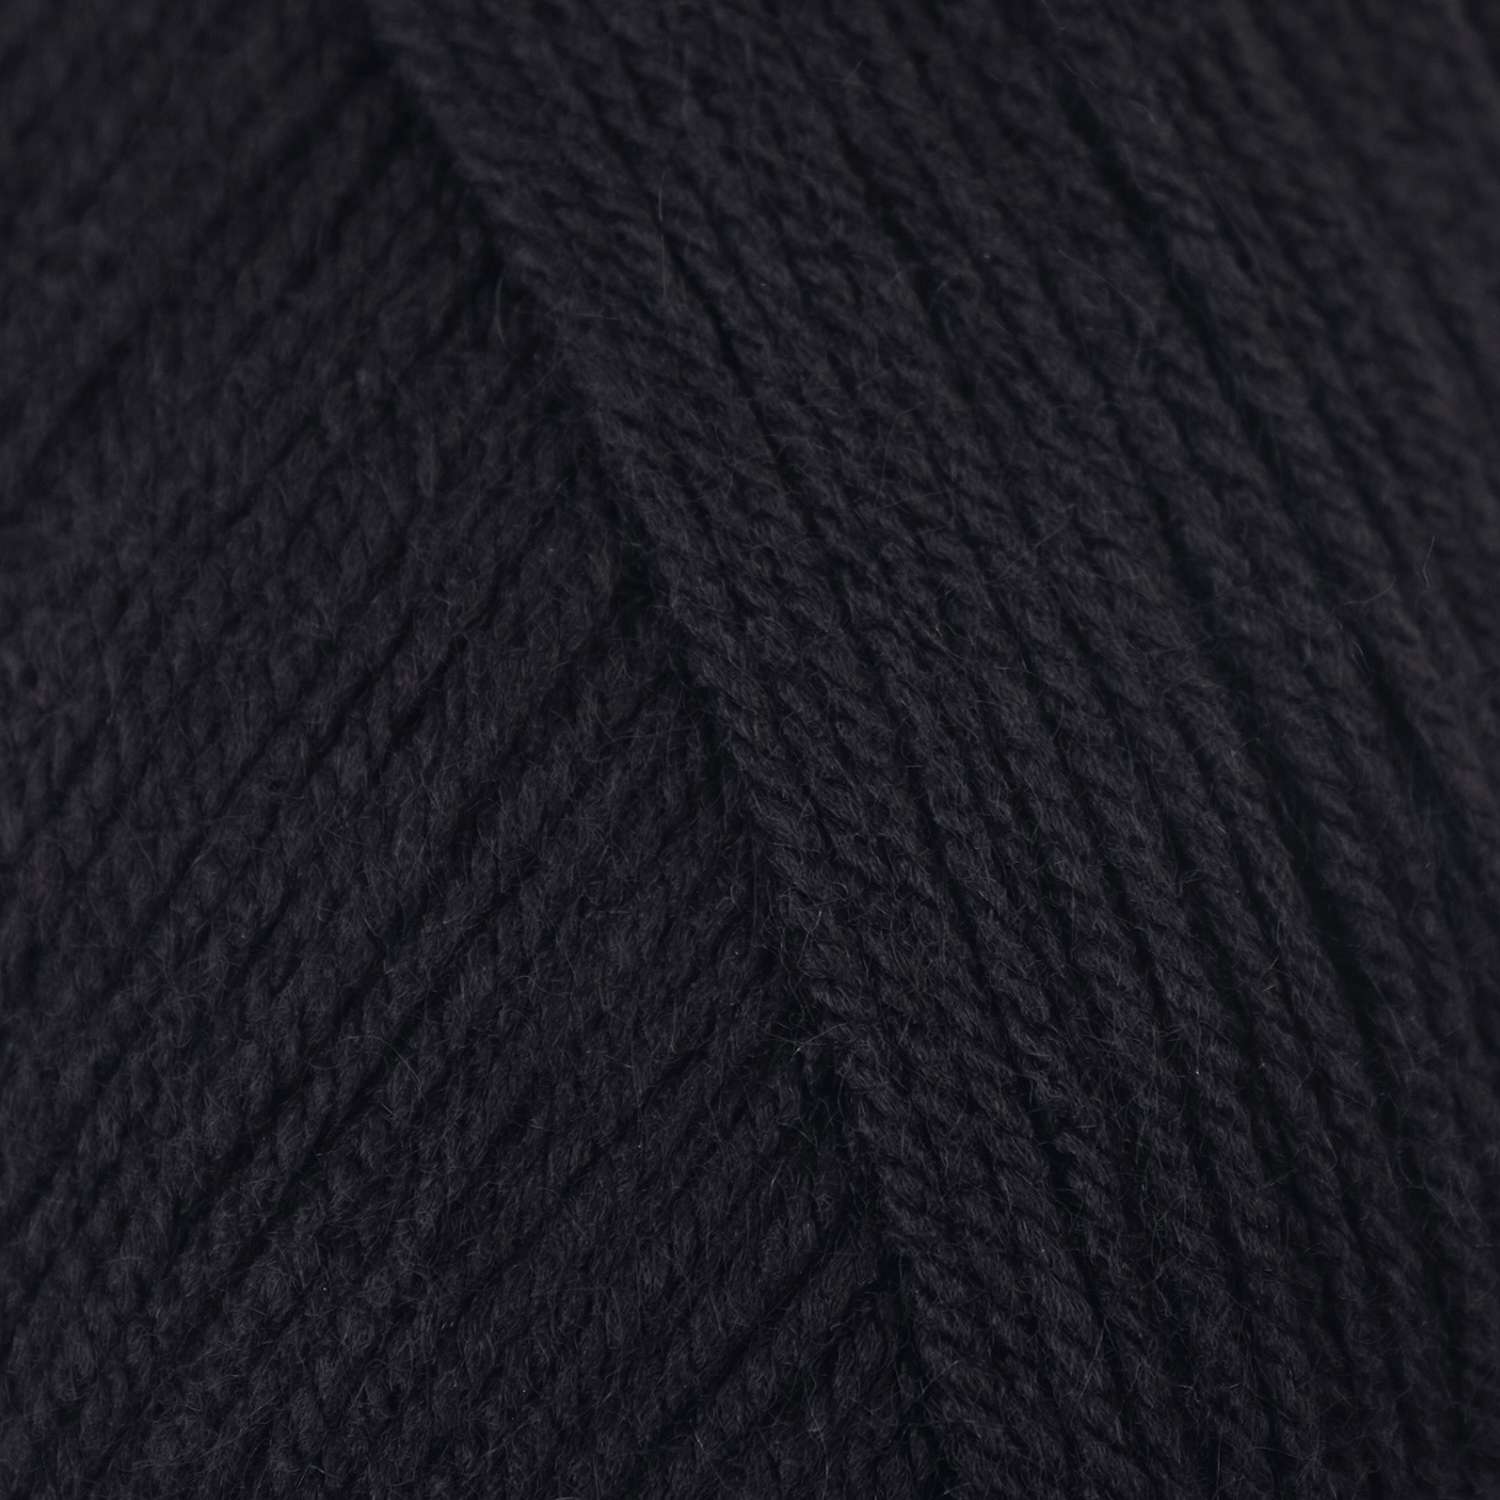 Пряжа Пехорский текстиль Черный 1140456 - фото 2